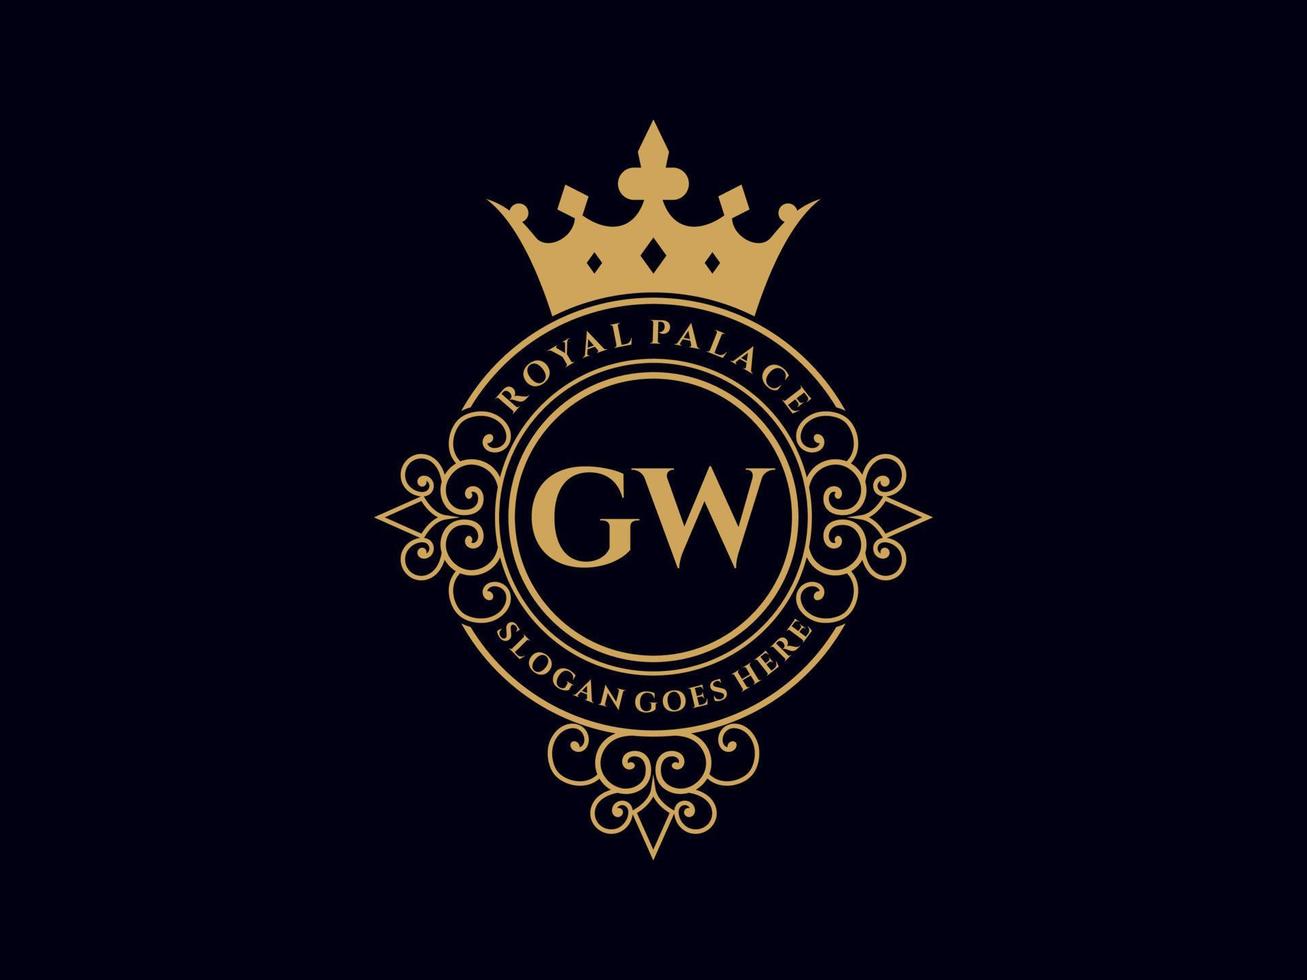 lettre gw logo victorien de luxe royal antique avec cadre ornemental. vecteur